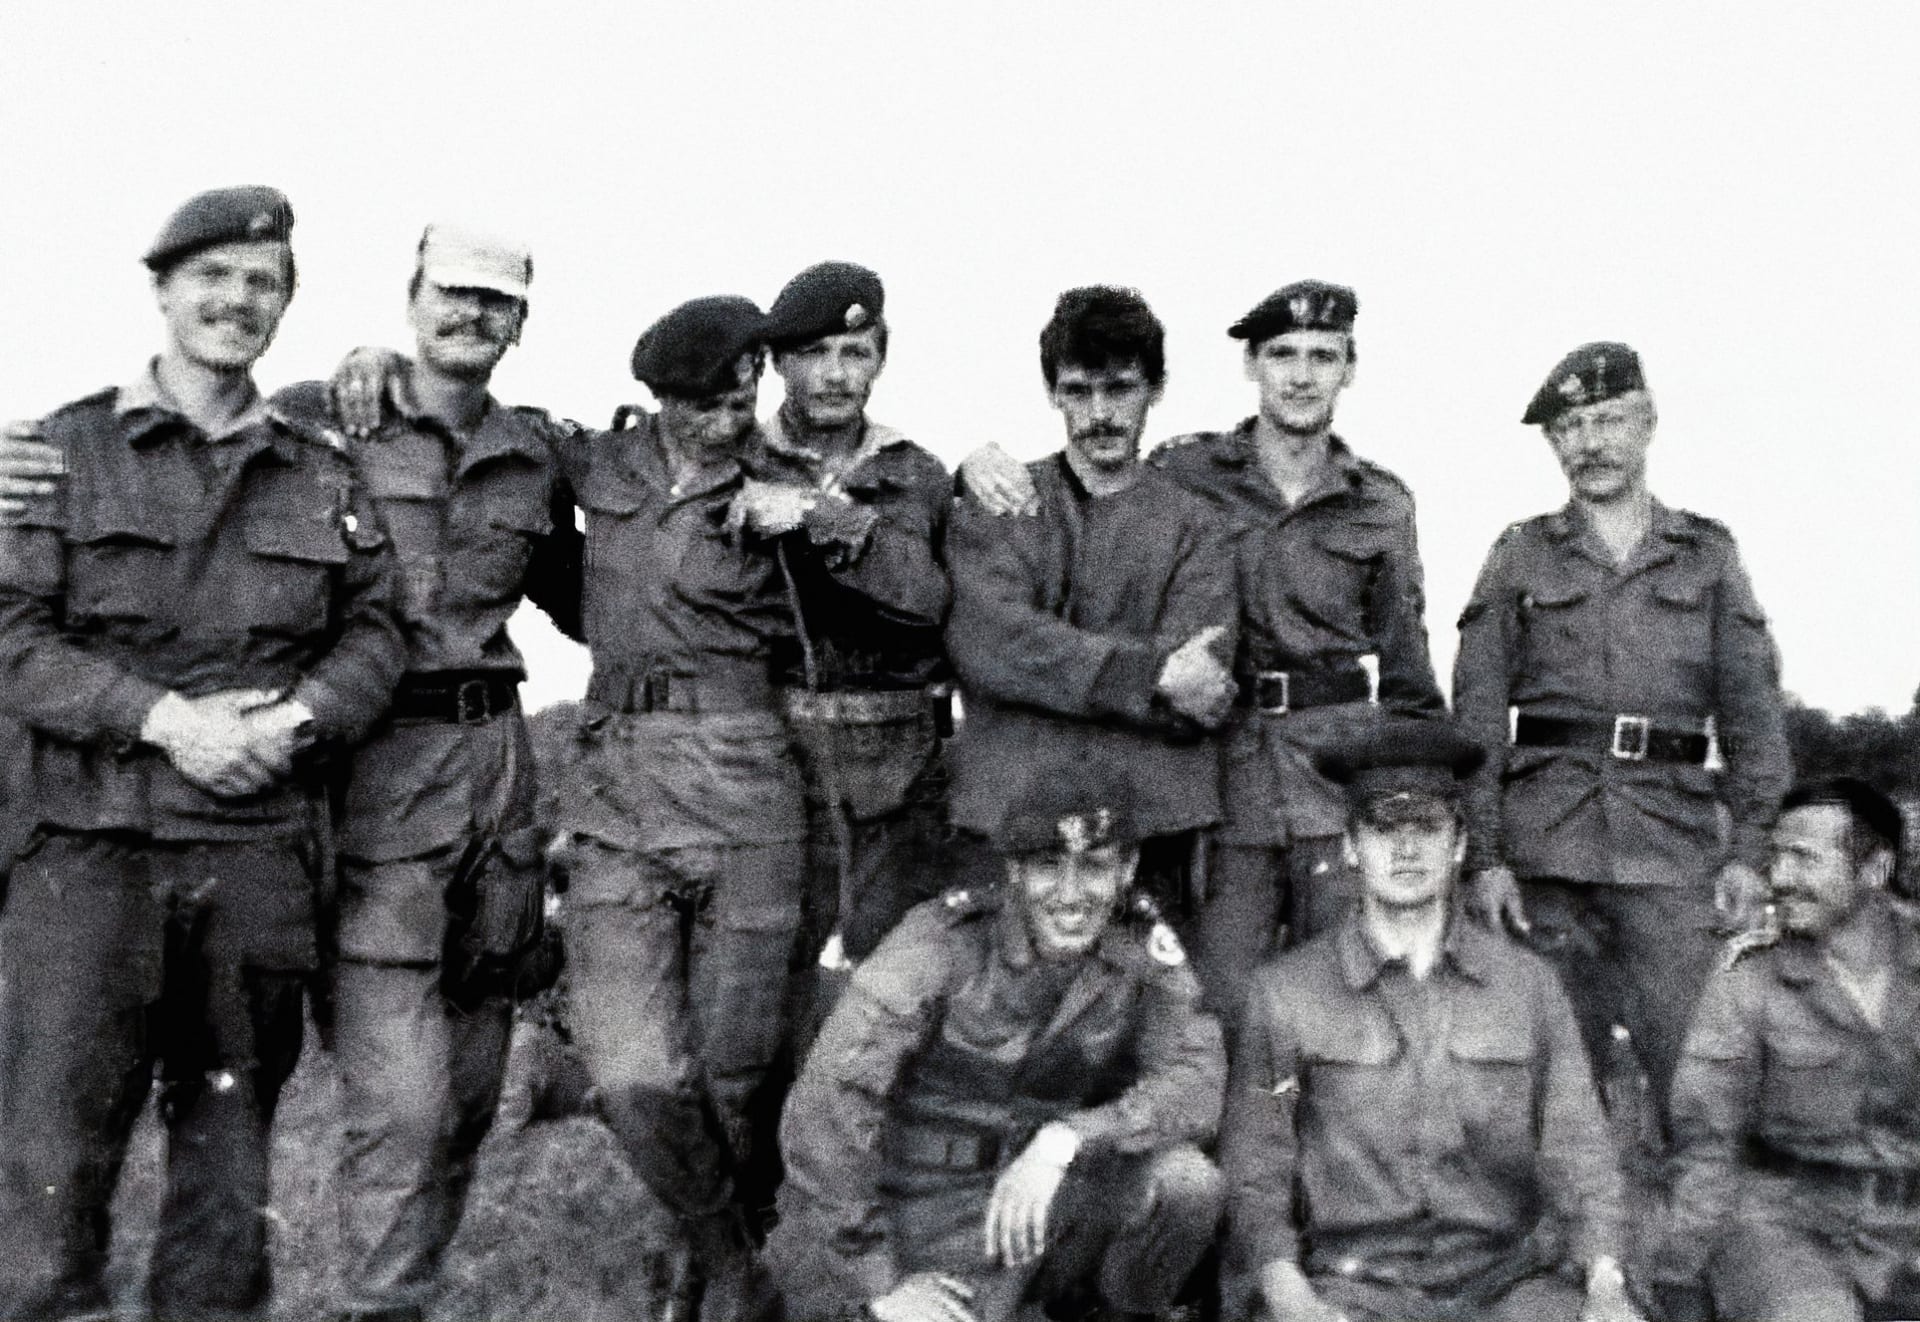 Z archivu: Petr Pavel (úplně vlevo) na vojenském cvičení výsadkářů. Snímek pochází z roku 1984.